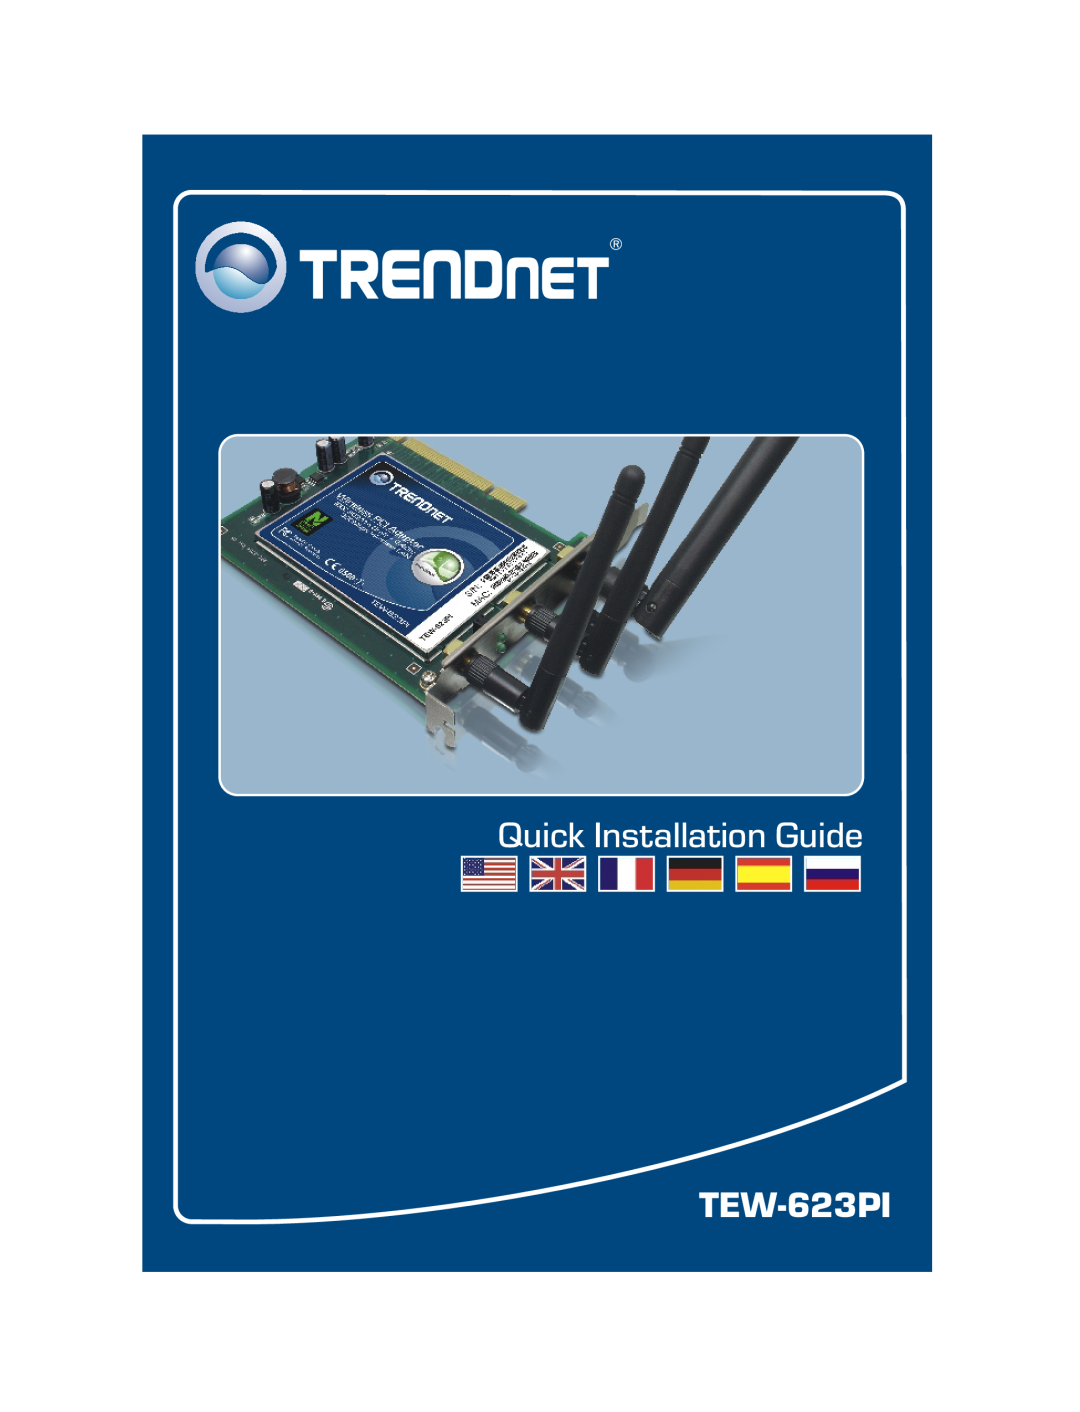 TRENDnet TK-802R, TRENDNET manual Quick Installation Guide 